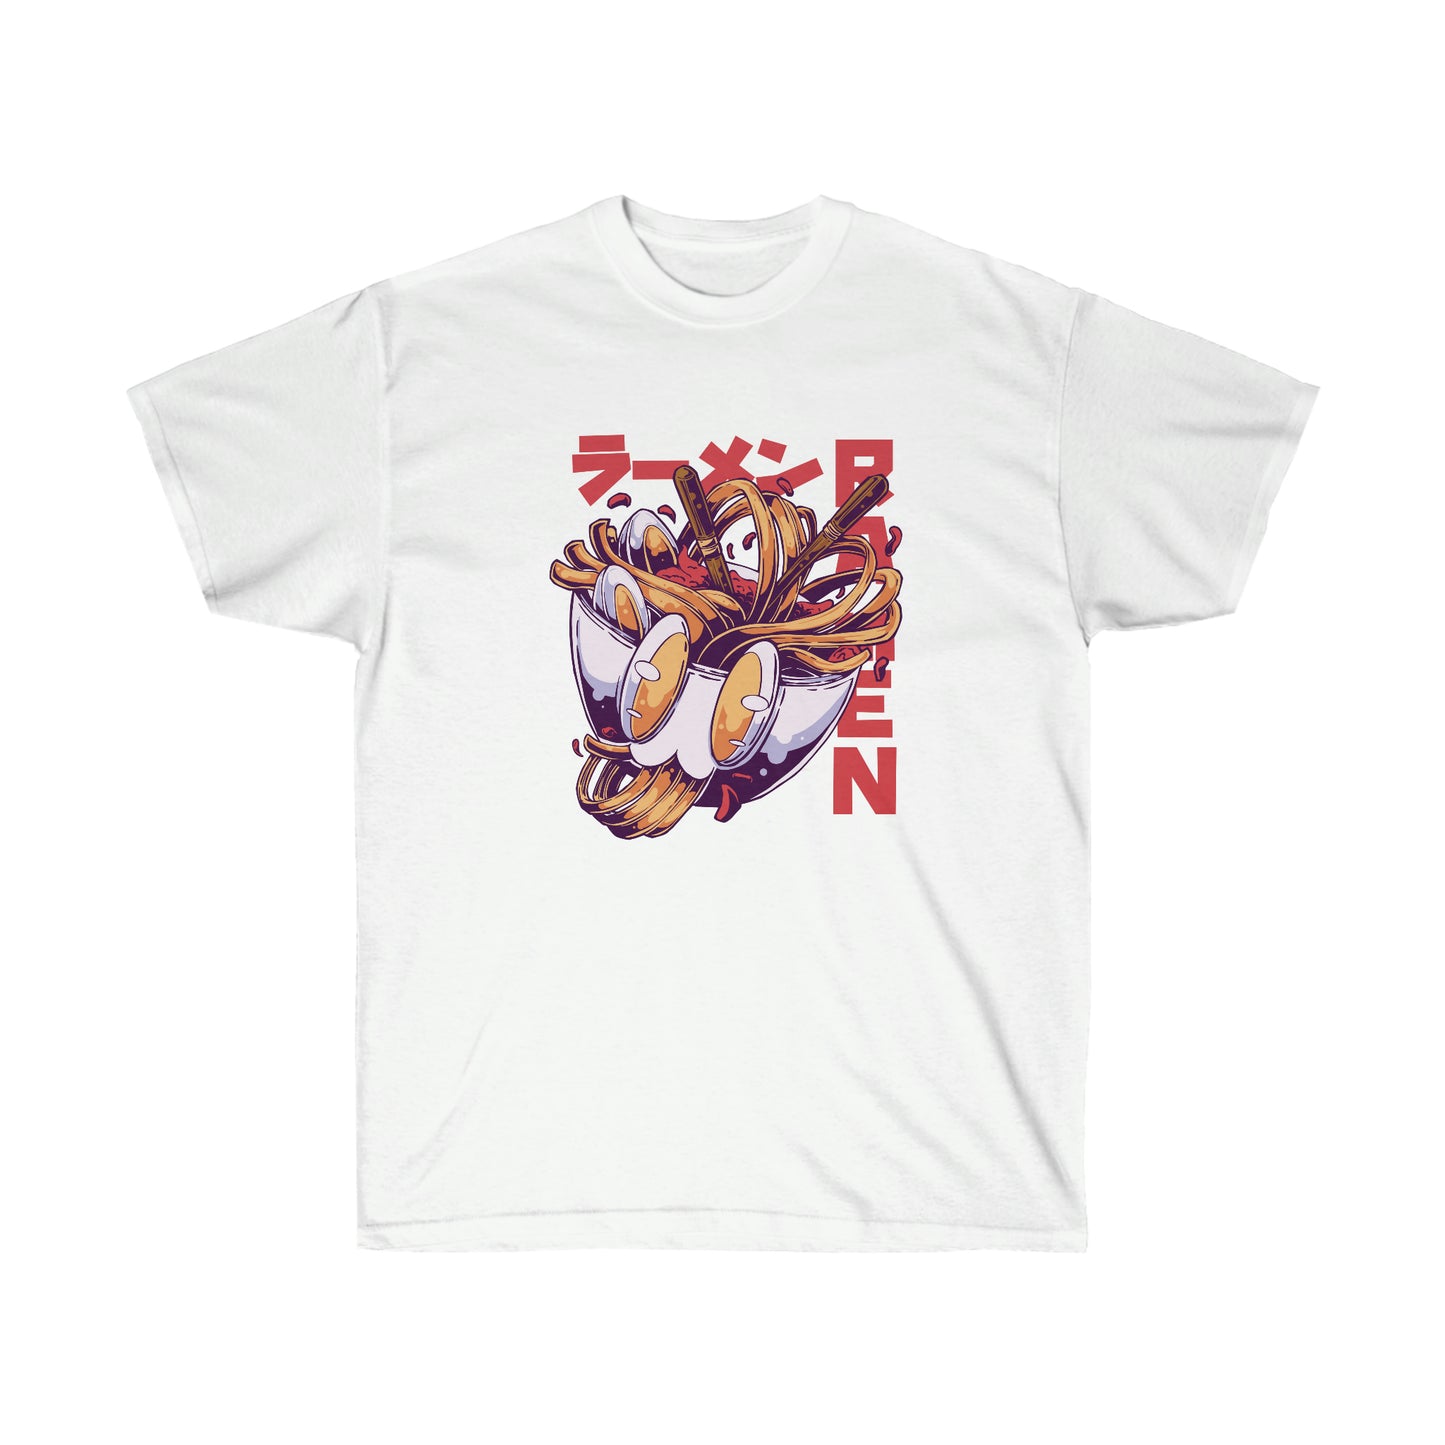 Kawaii Sweatshirt, Kawaii Clothing, Kawaii Clothes, Yami Kawaii Aesthetic, Pastel Kawaii Anime Ramen Sweatshirt T-Shirt